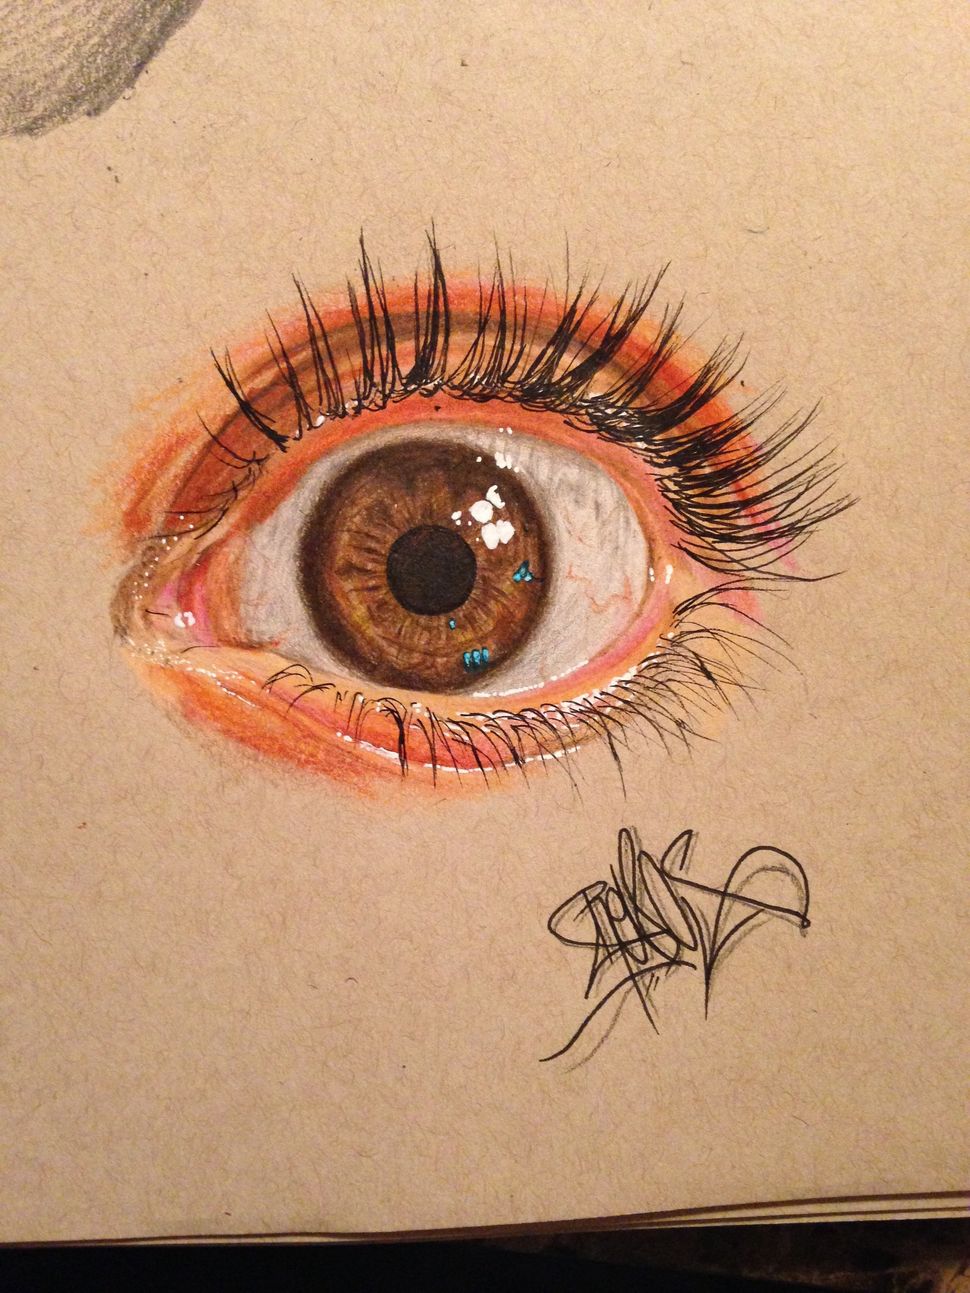 19YearOld Artist Creates Striking Hyperreal Drawings Of Eyes HuffPost